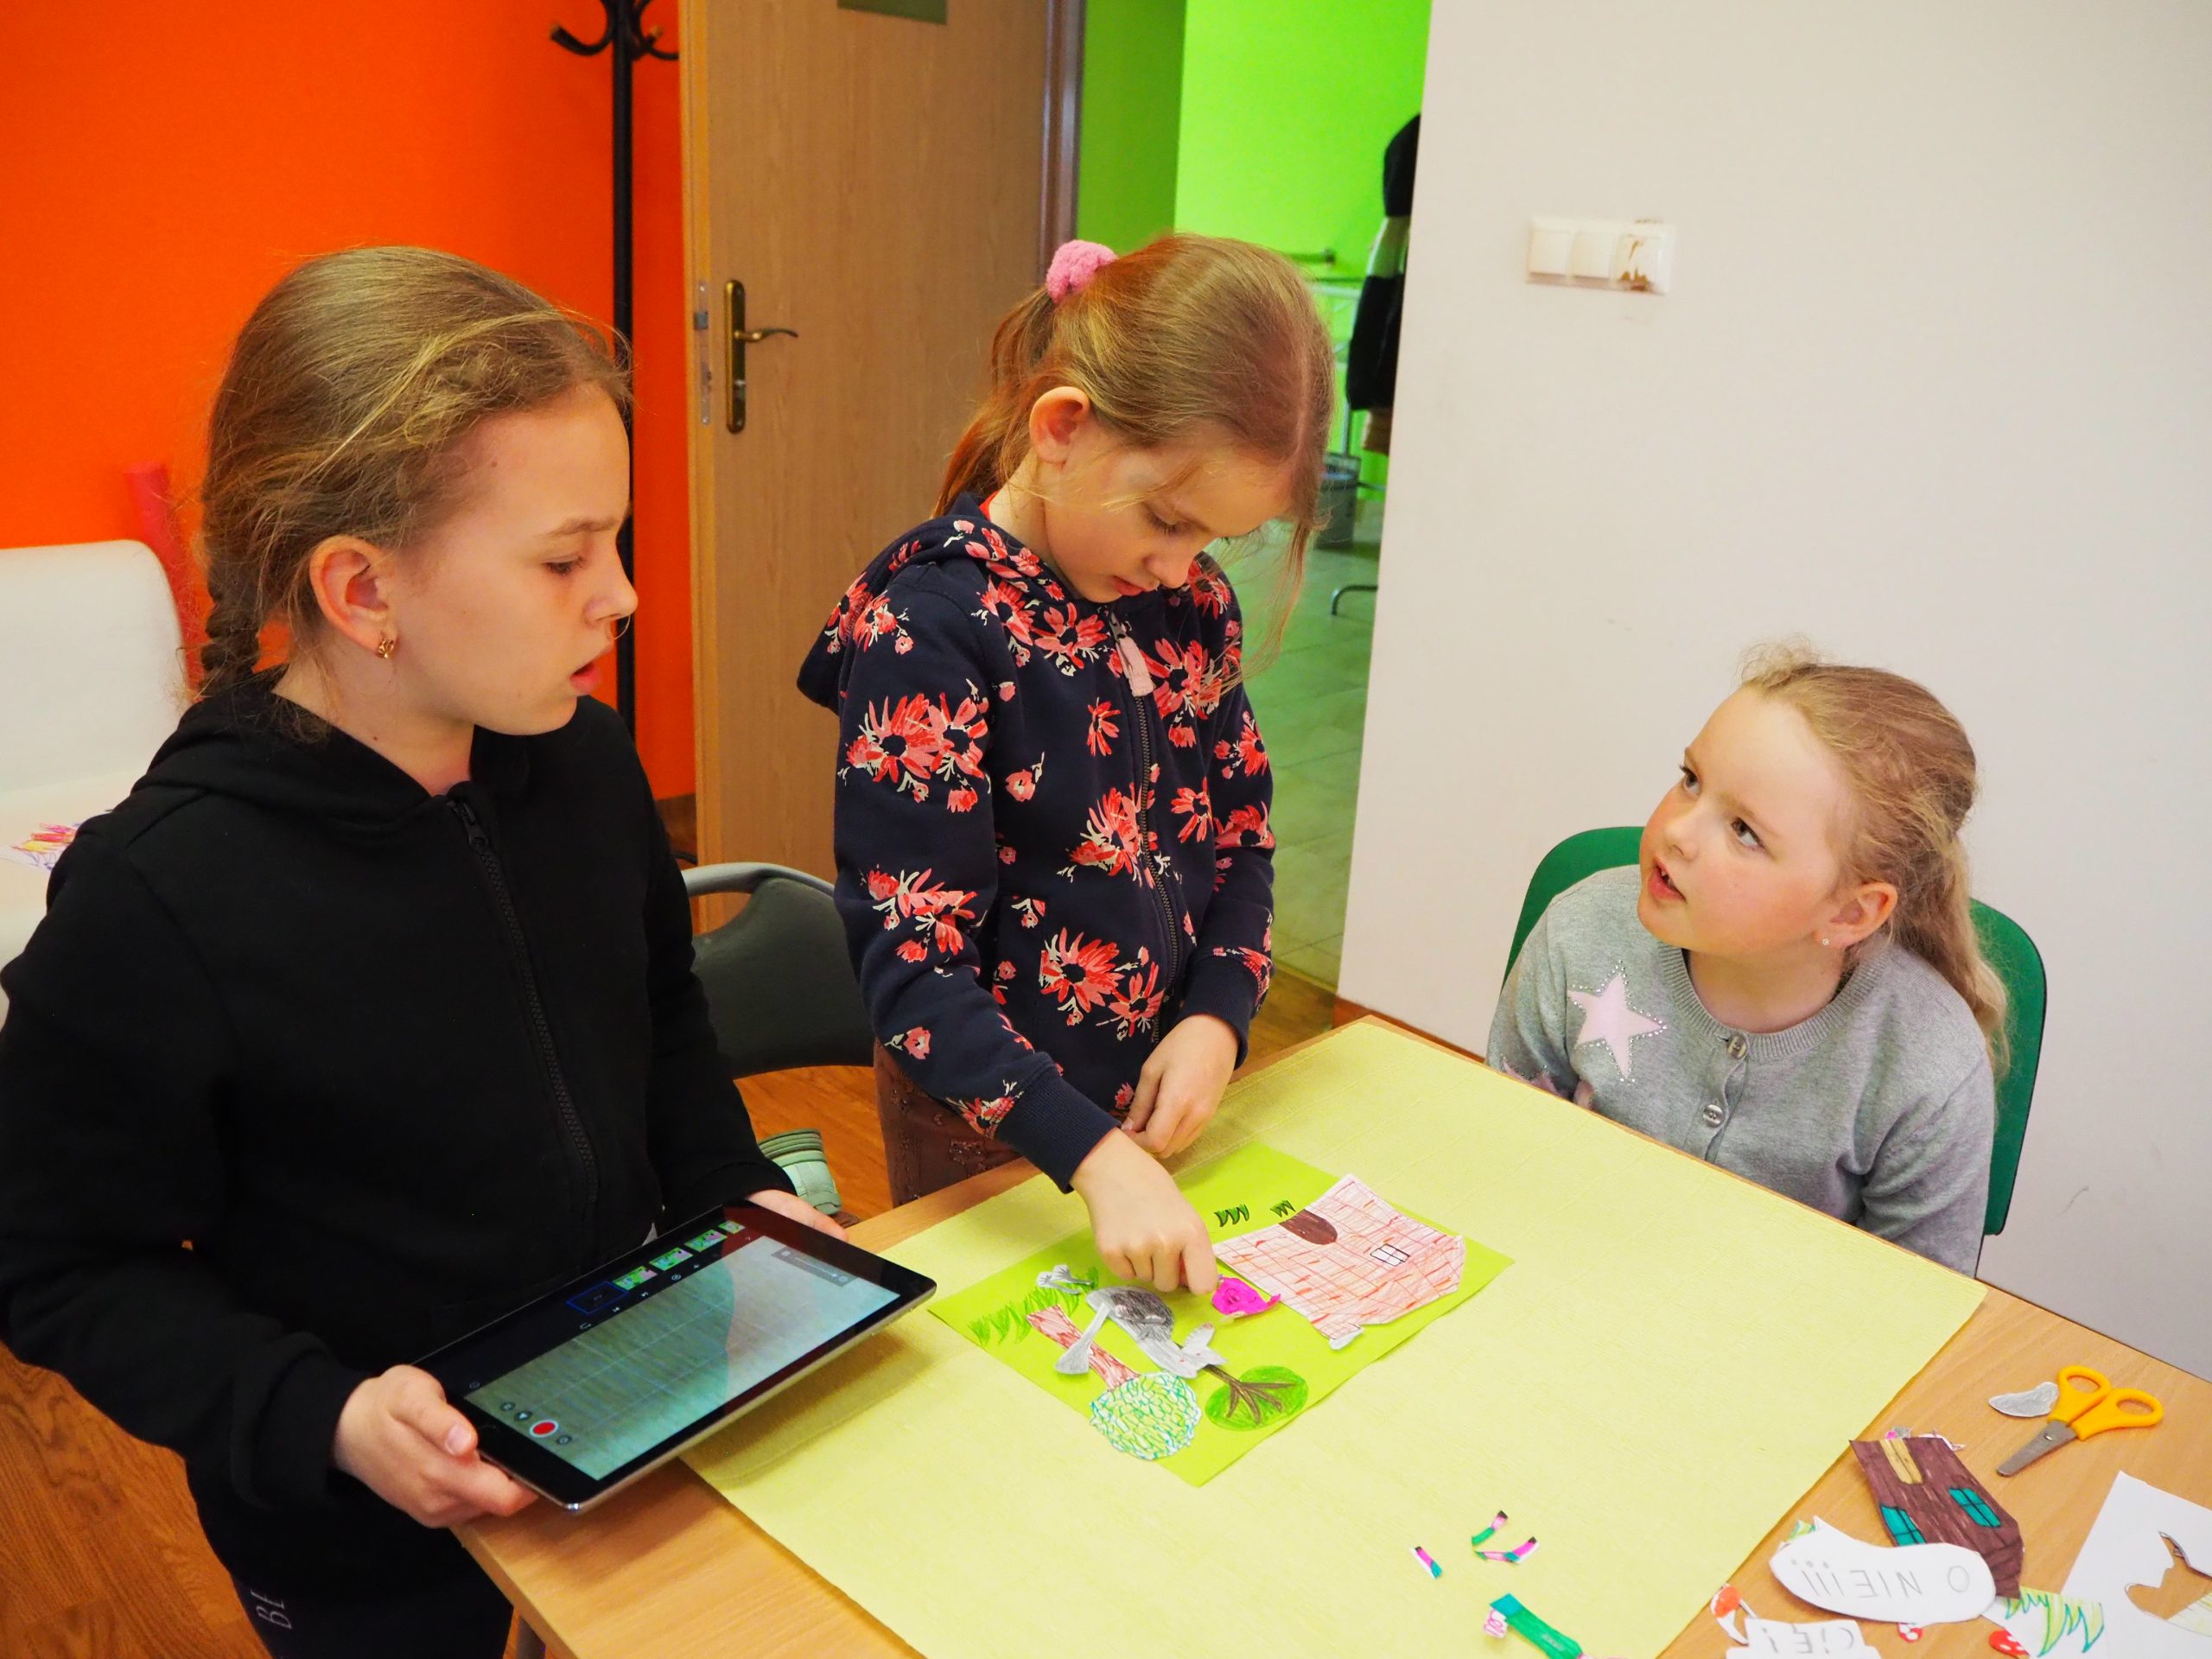 trzy dziewczynki przy stole robią razem obrazek jedna z nich trzyma tablet a druga układa elementy z papieru na zielonej kartce